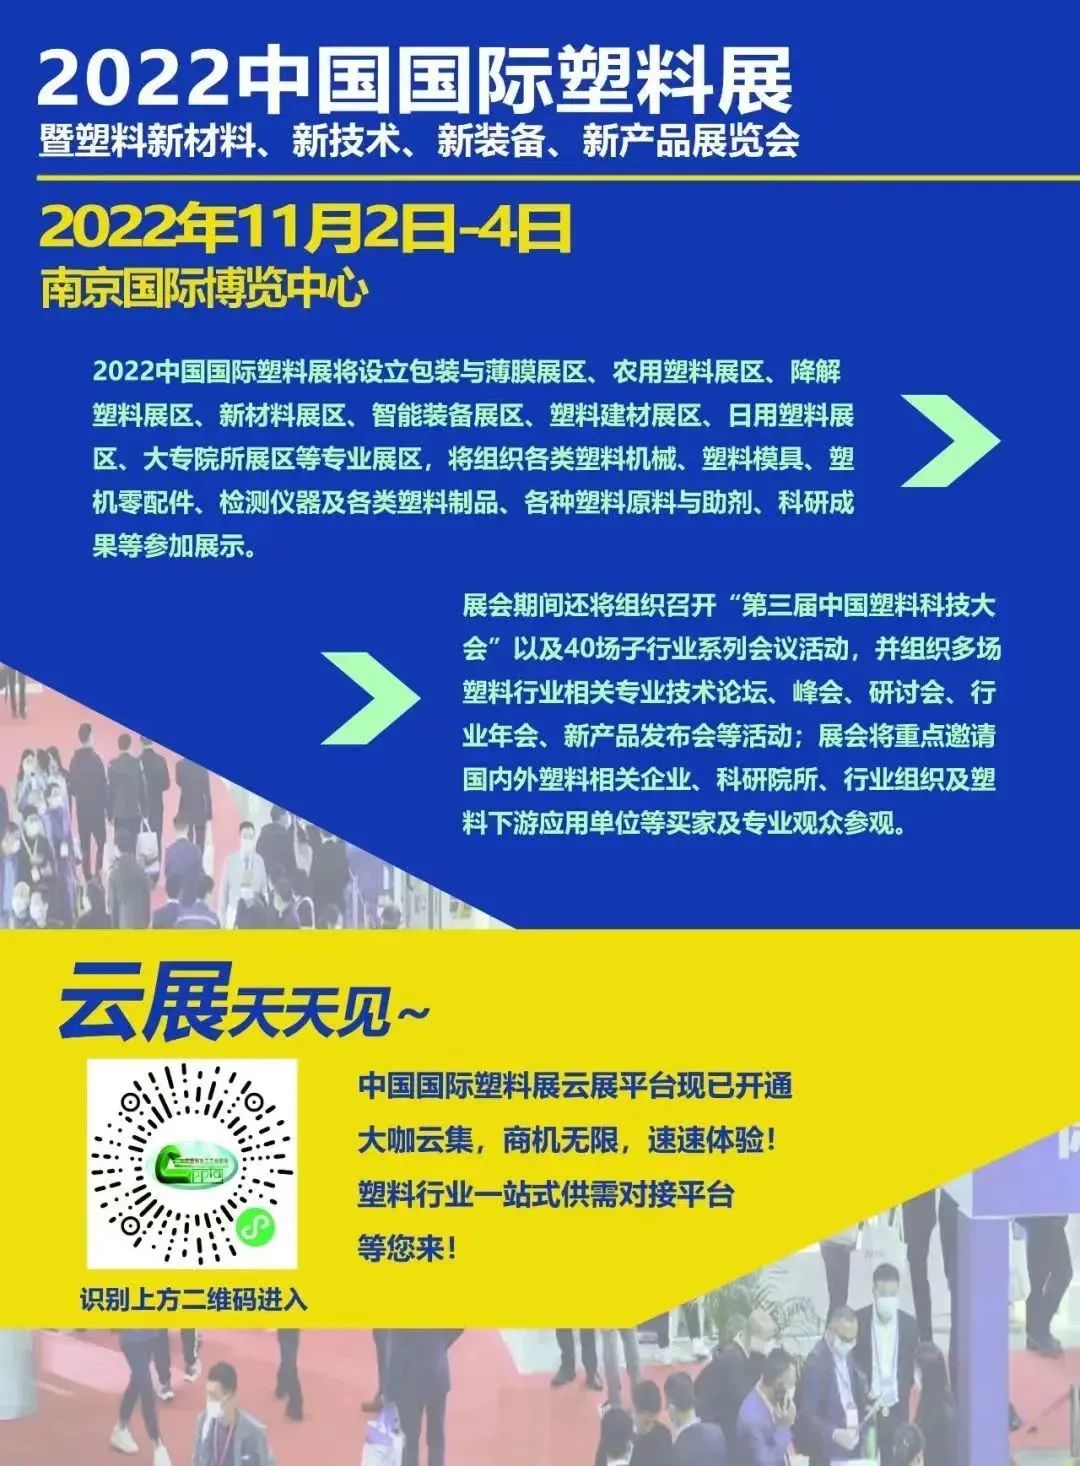 2022南京中国国际塑料展——河南省菲优特过滤碟片